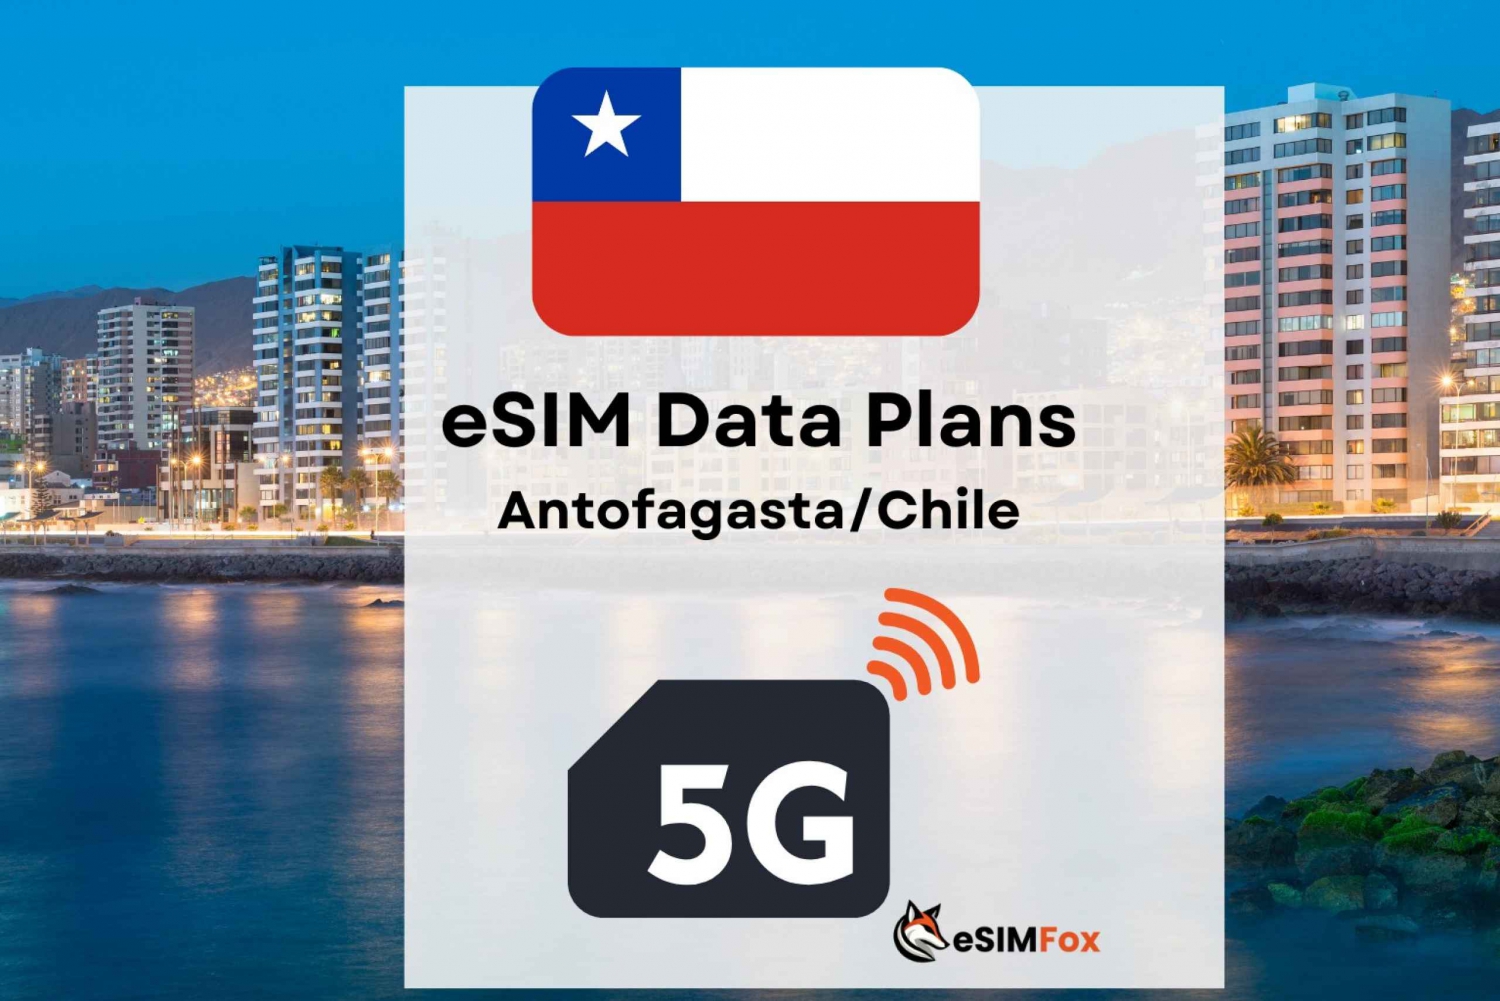 Antofagasta: Piano dati Internet eSIM per il Cile